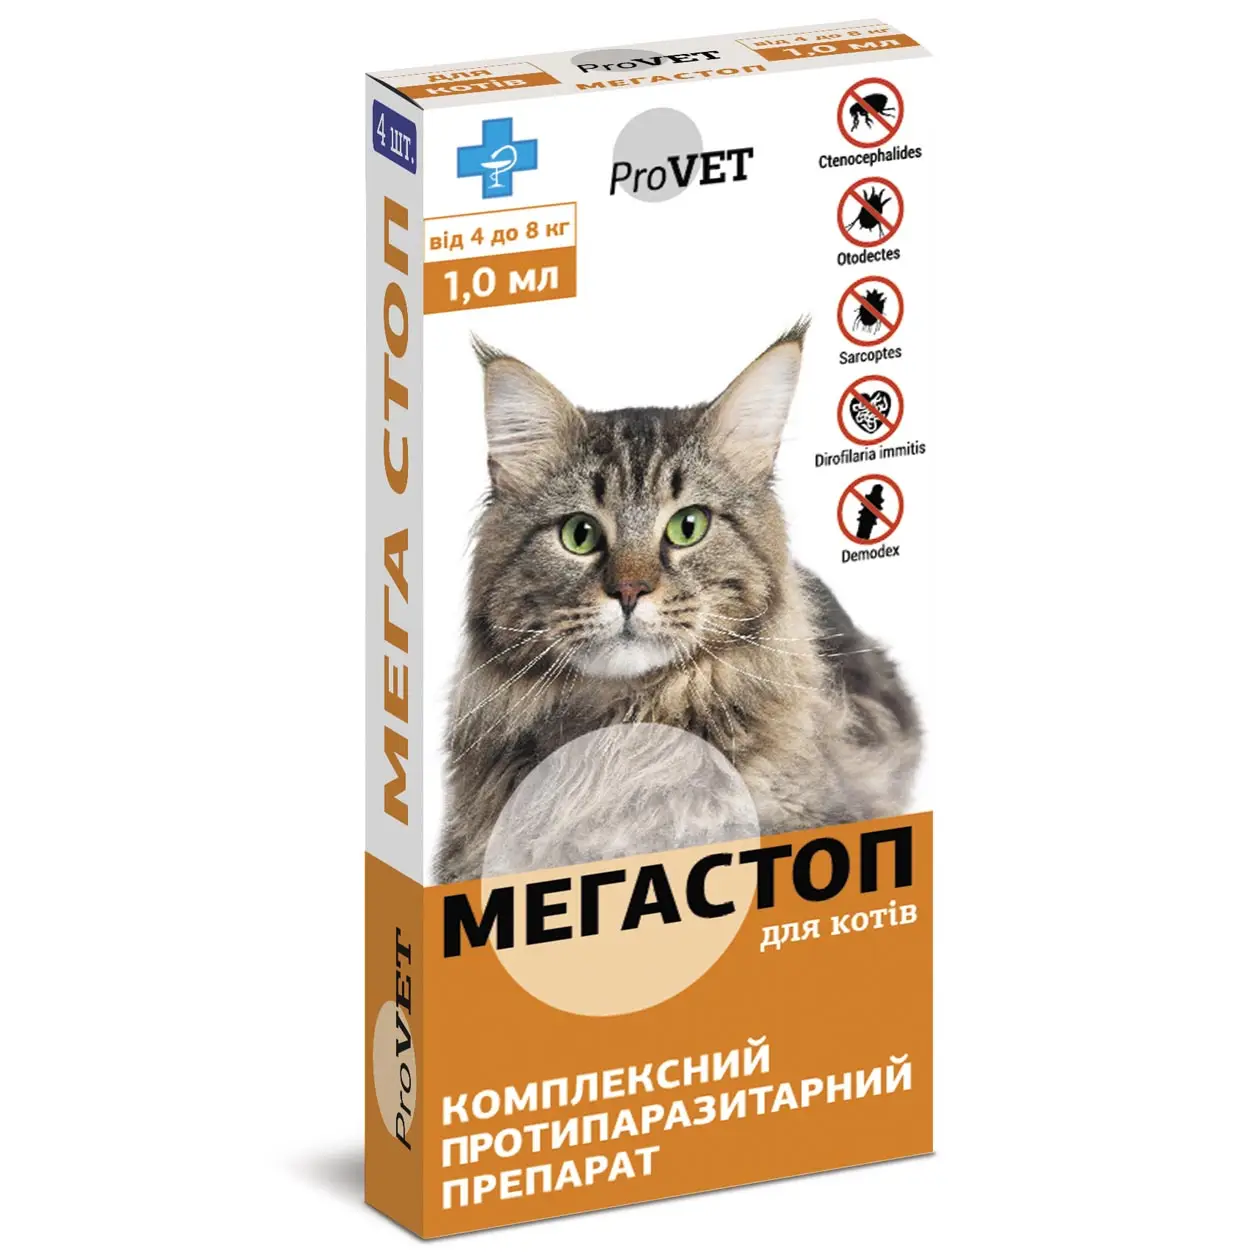 Капли на холку для кошек ProVET Мега Стоп, от внешних и внутренних паразитов, от 4 до 8 кг, 4 пипетки по 1 мл (PR020074) - фото 1